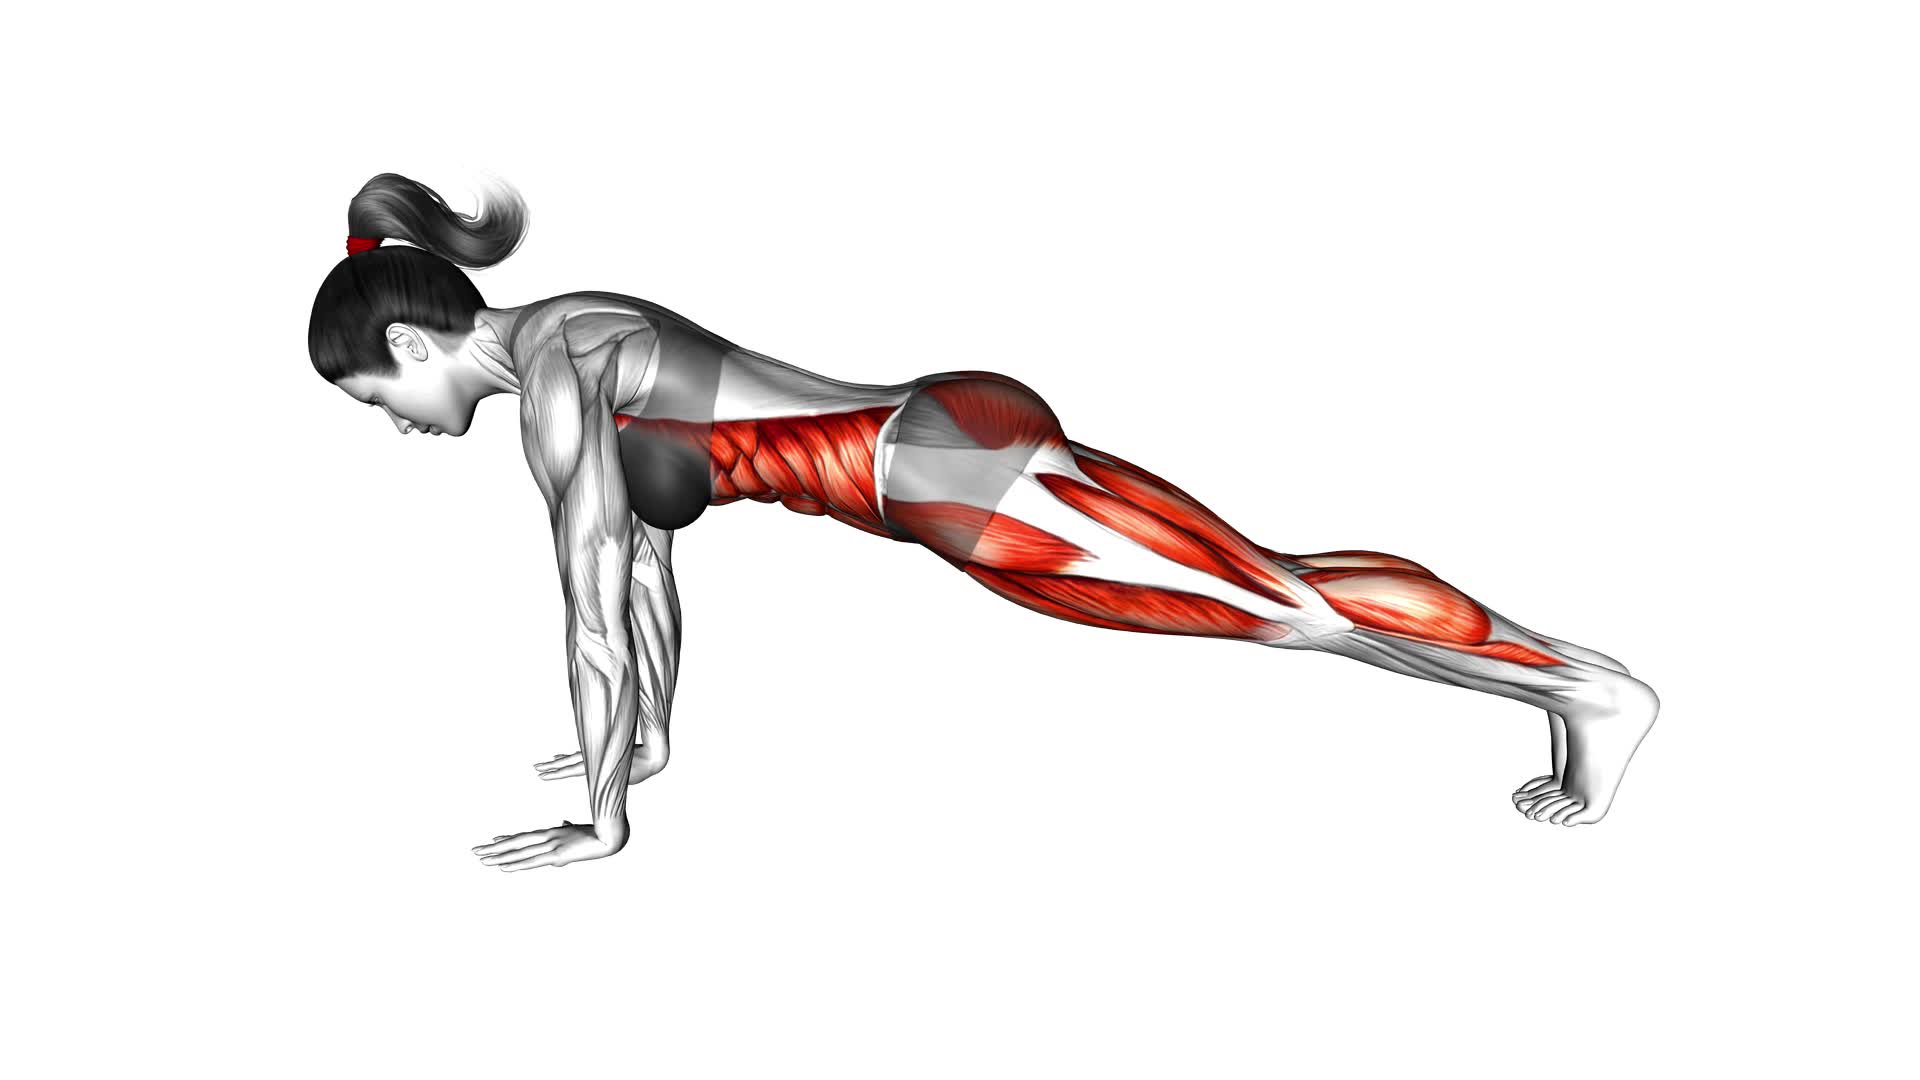 Plank Alternate Knee Tuck (female) - Video Exercise Guide & Tips